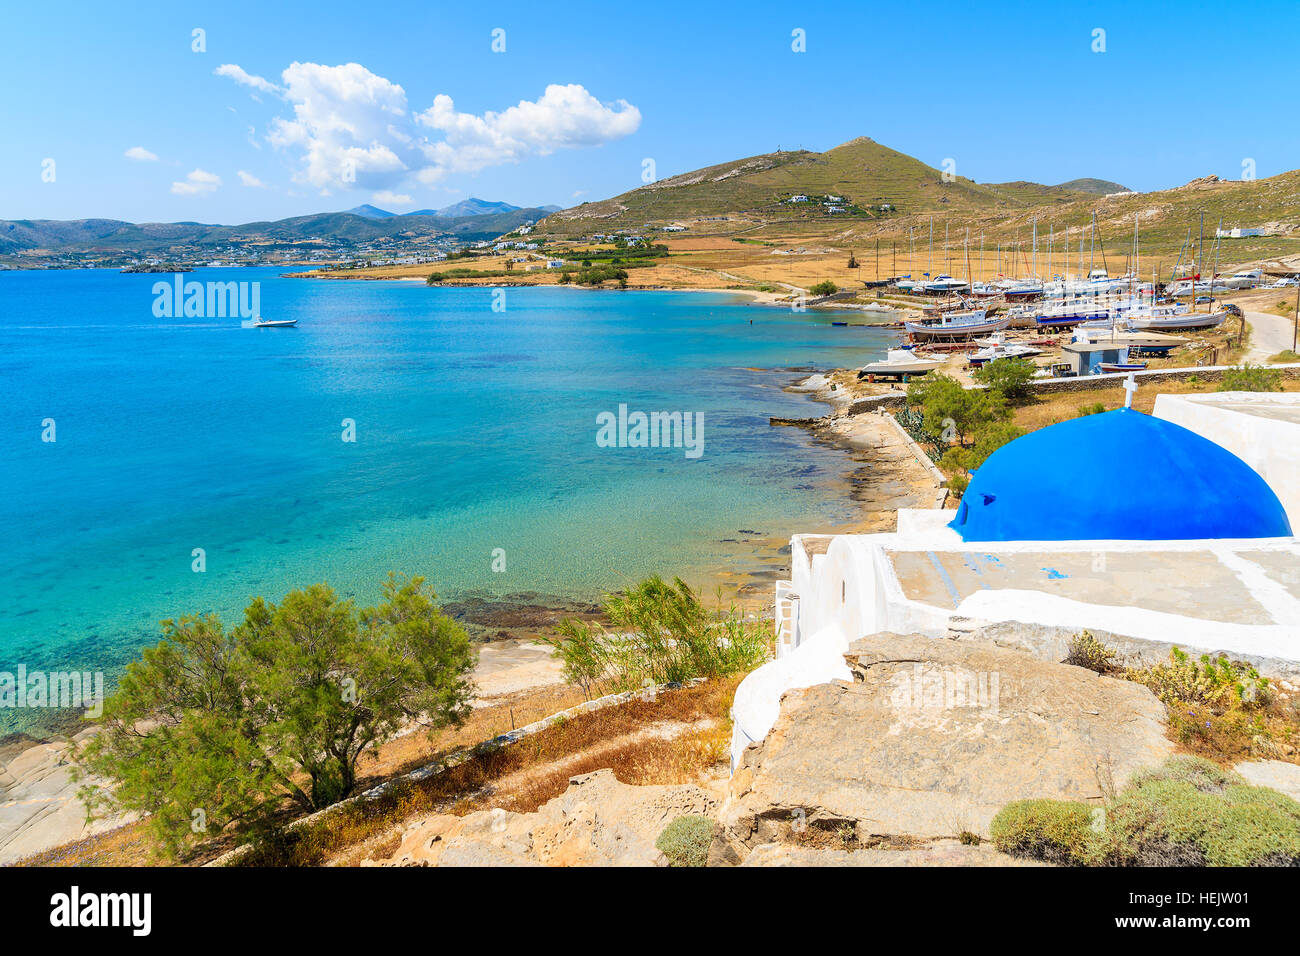 Bianco tradizionale chiesa greca sulla spiaggia Monastiri, isola di Paros, Grecia Foto Stock